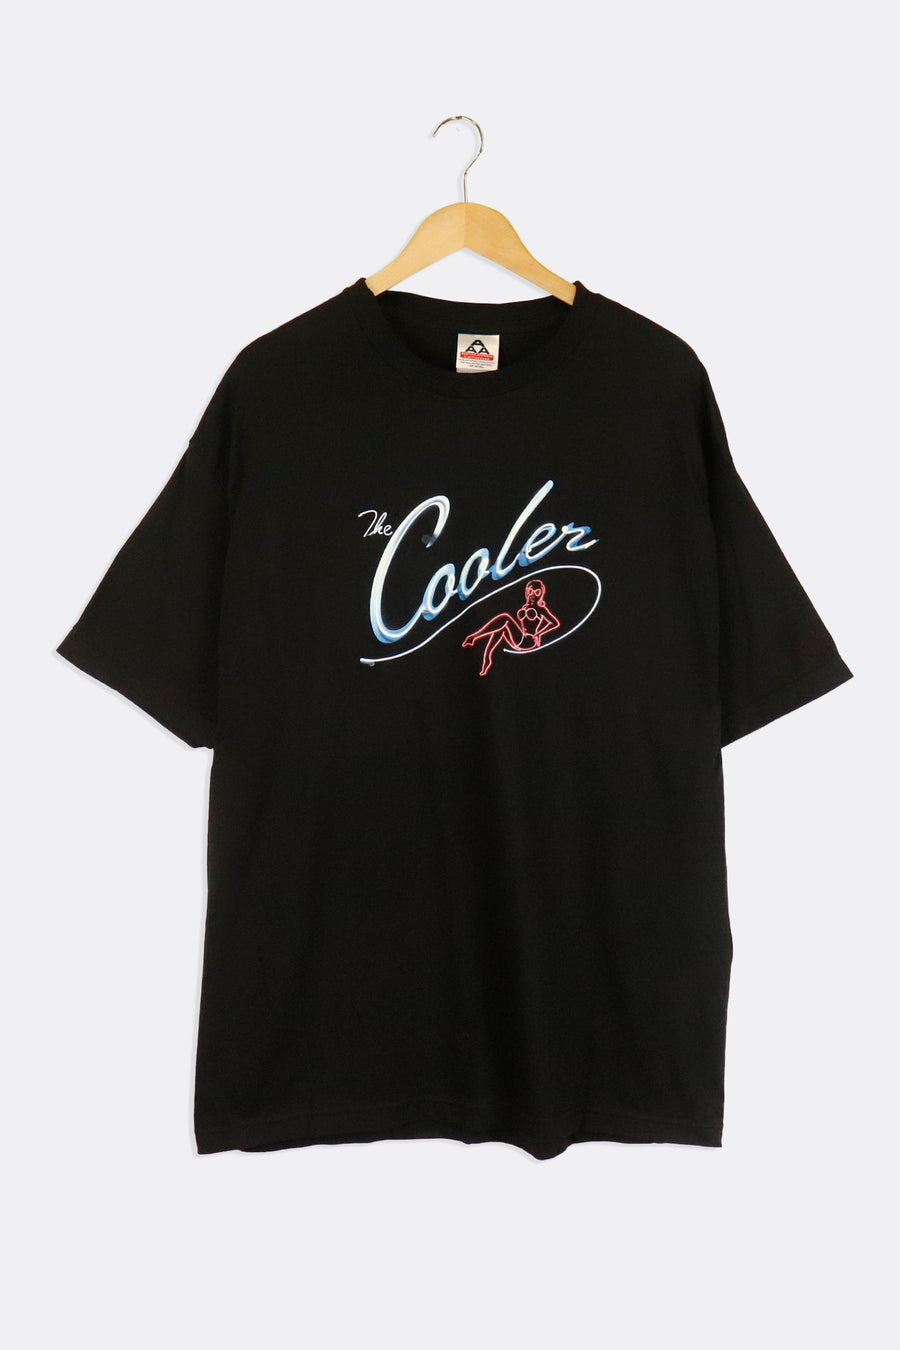 Vintage The Cooler Movie Promo T Shirt Sz XL